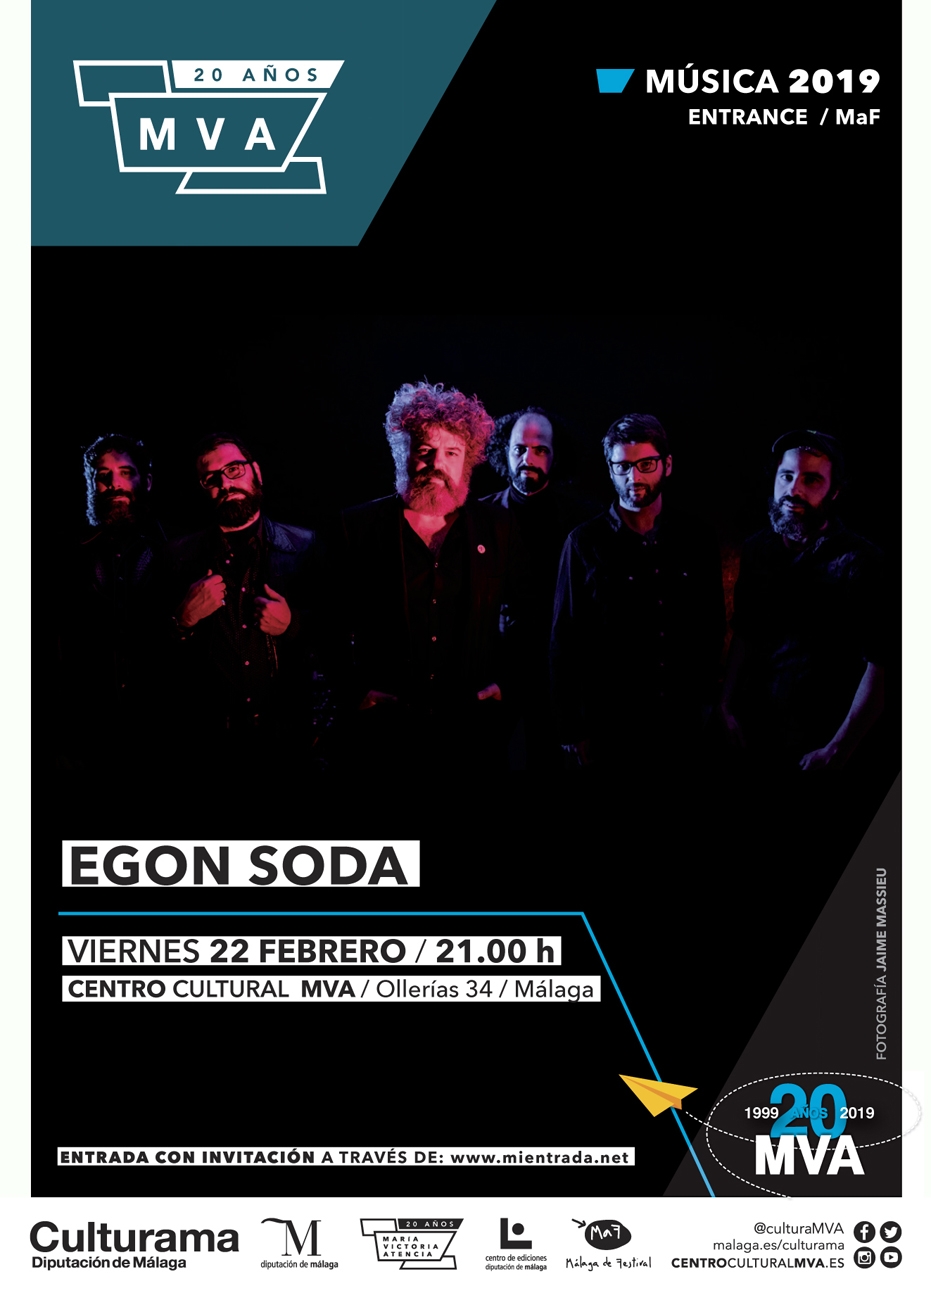 Ciclo 'Entrance' especial MaF: concierto de Egon Soda 